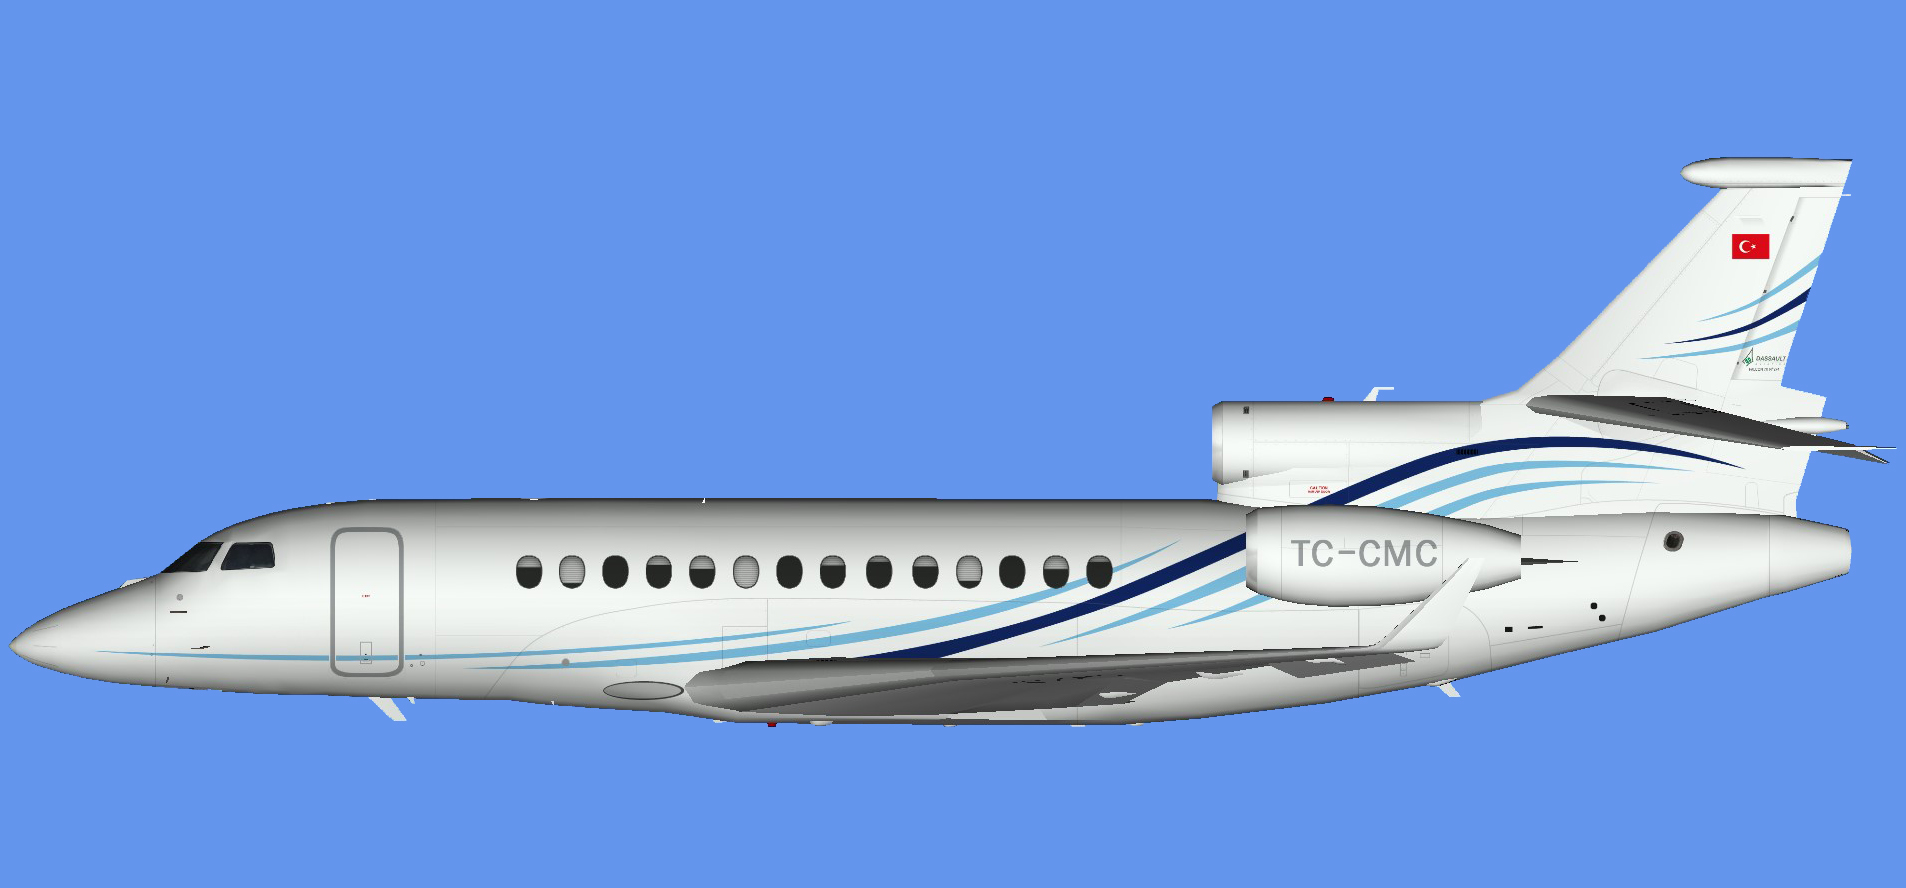 Dassault Falcon 7x TC-CMC